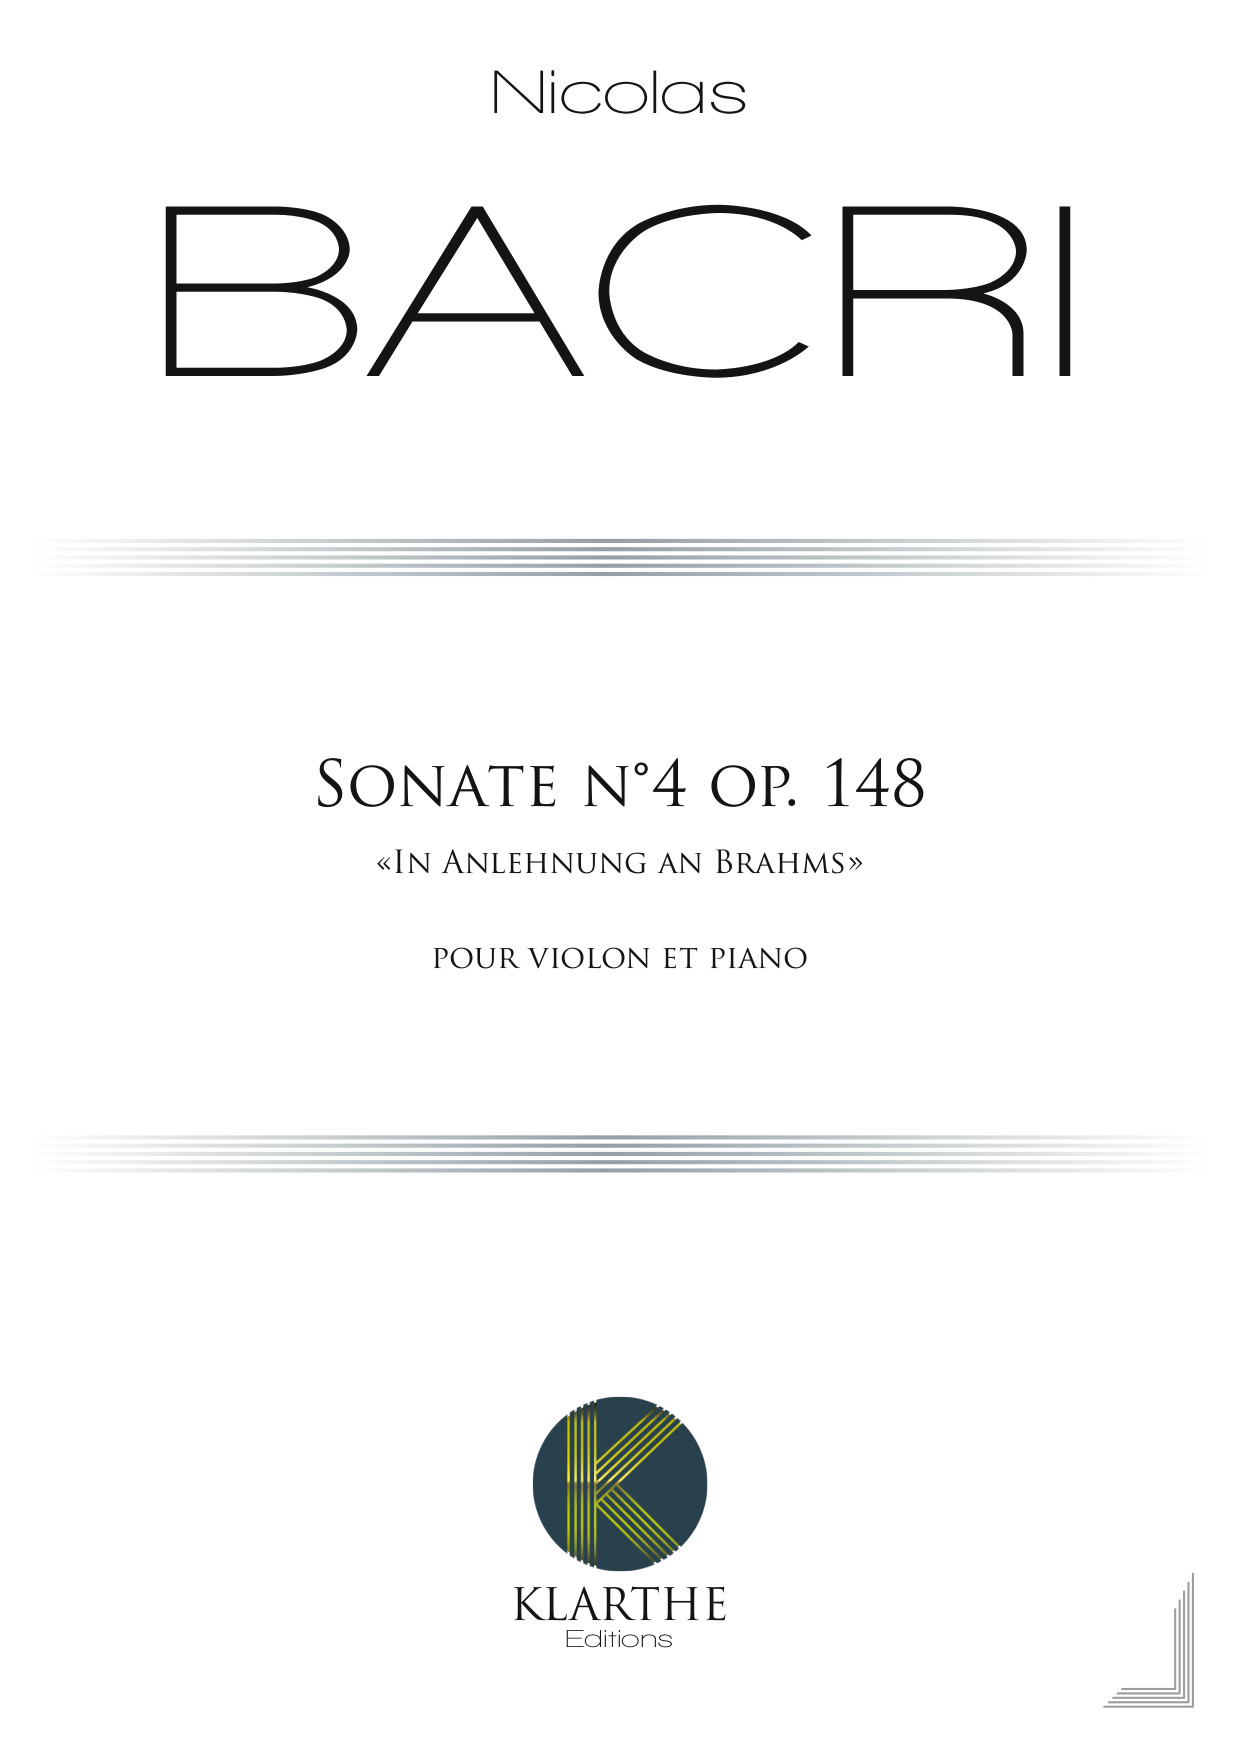 Sonate No. 4 op. 148 (BACRI NICOLAS)